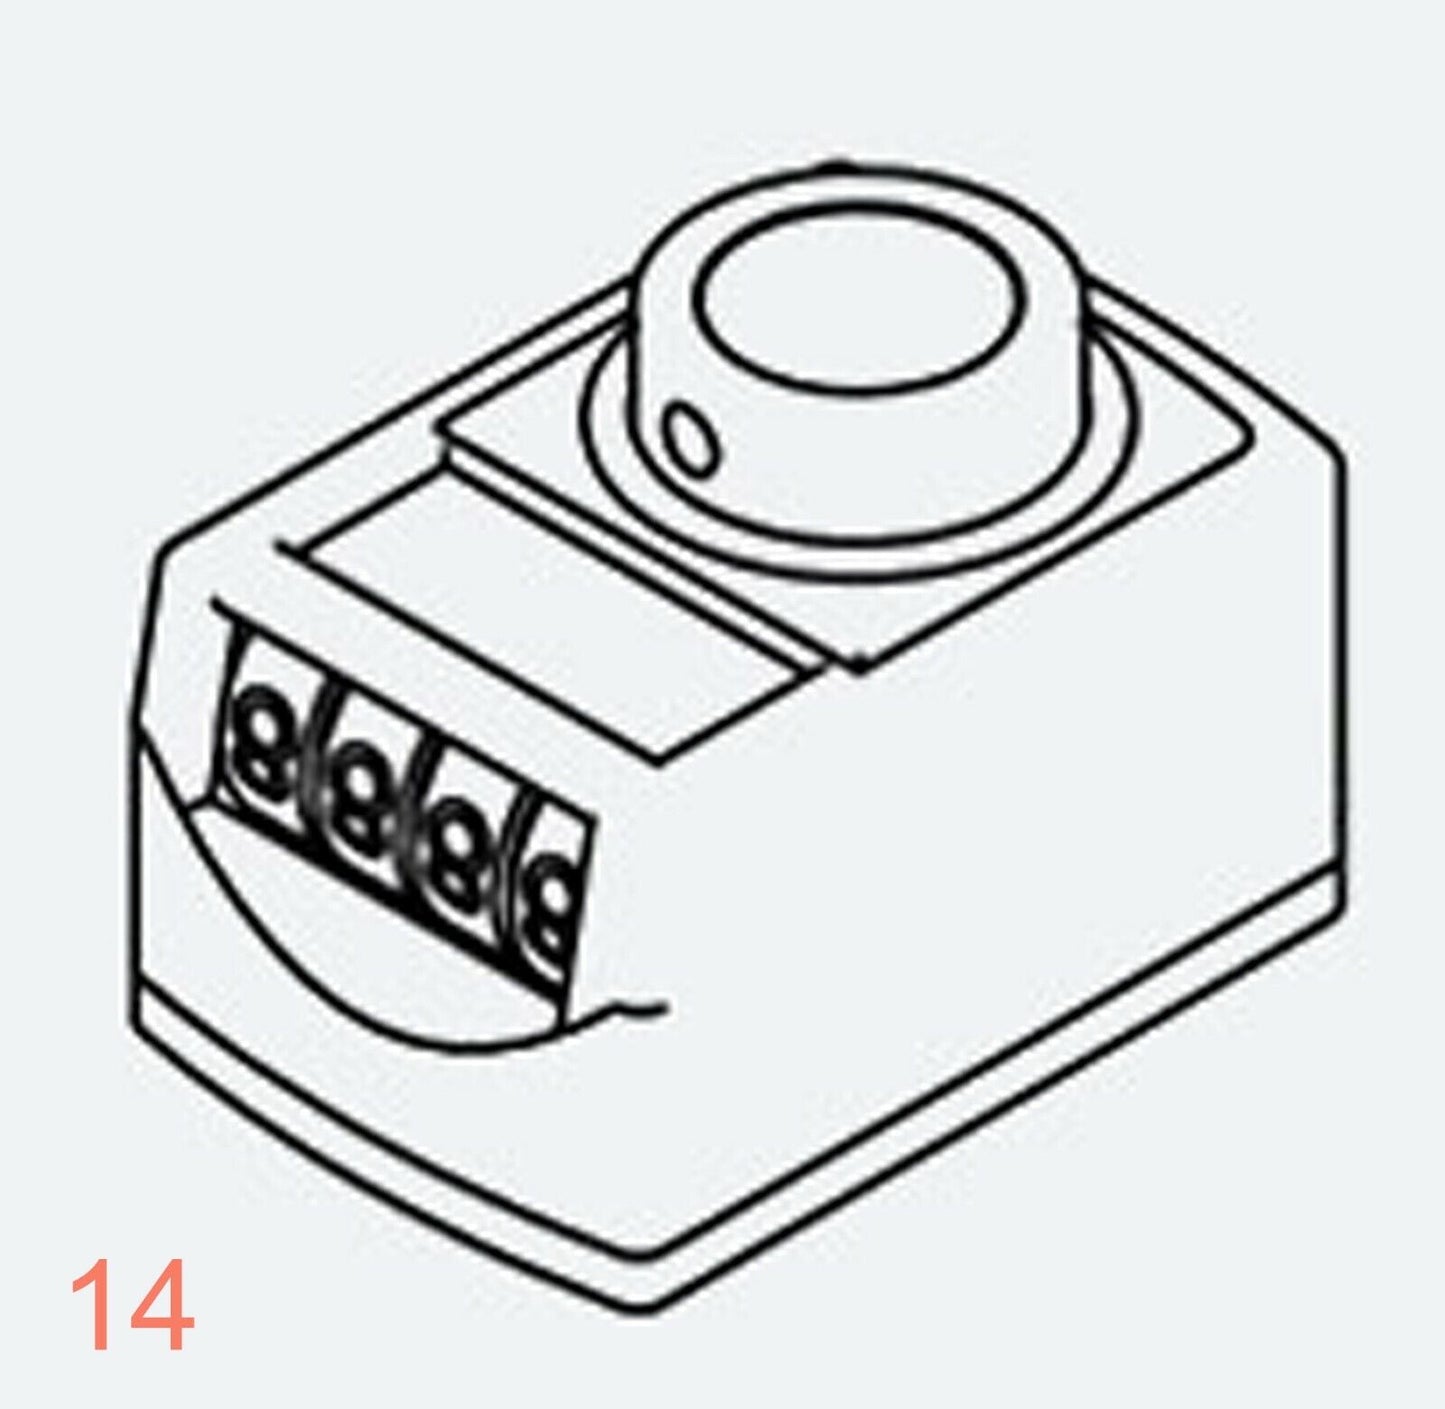 Affichage 0030 Arbre creux 30 mm Indicateur de position numérique Compteur